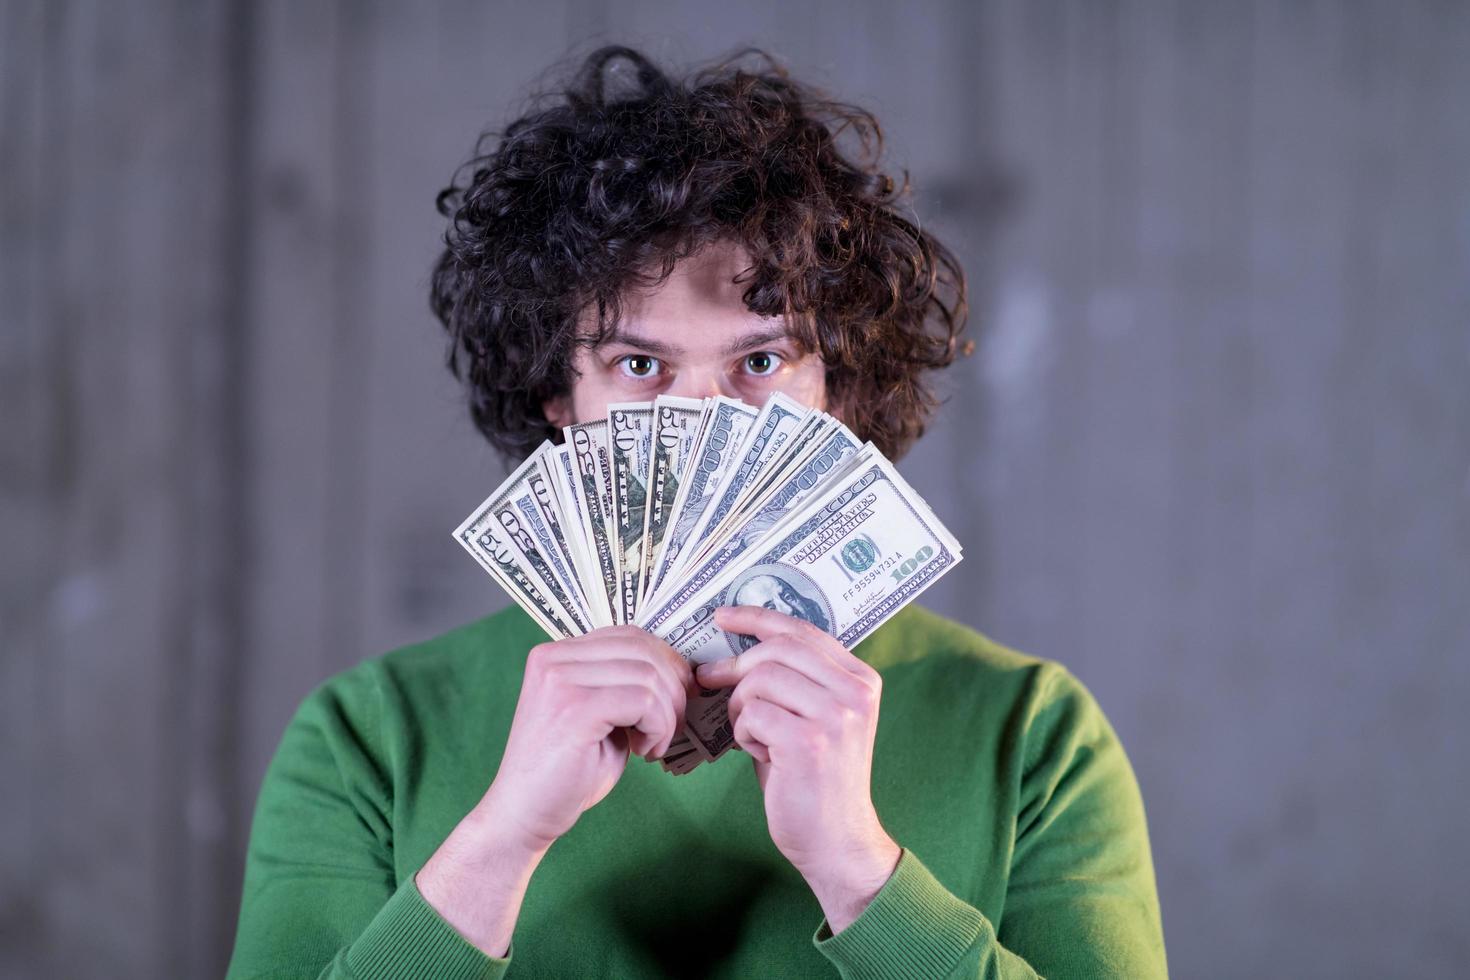 hombre de negocios que muestra una extensión de dinero en efectivo en dólares estadounidenses foto